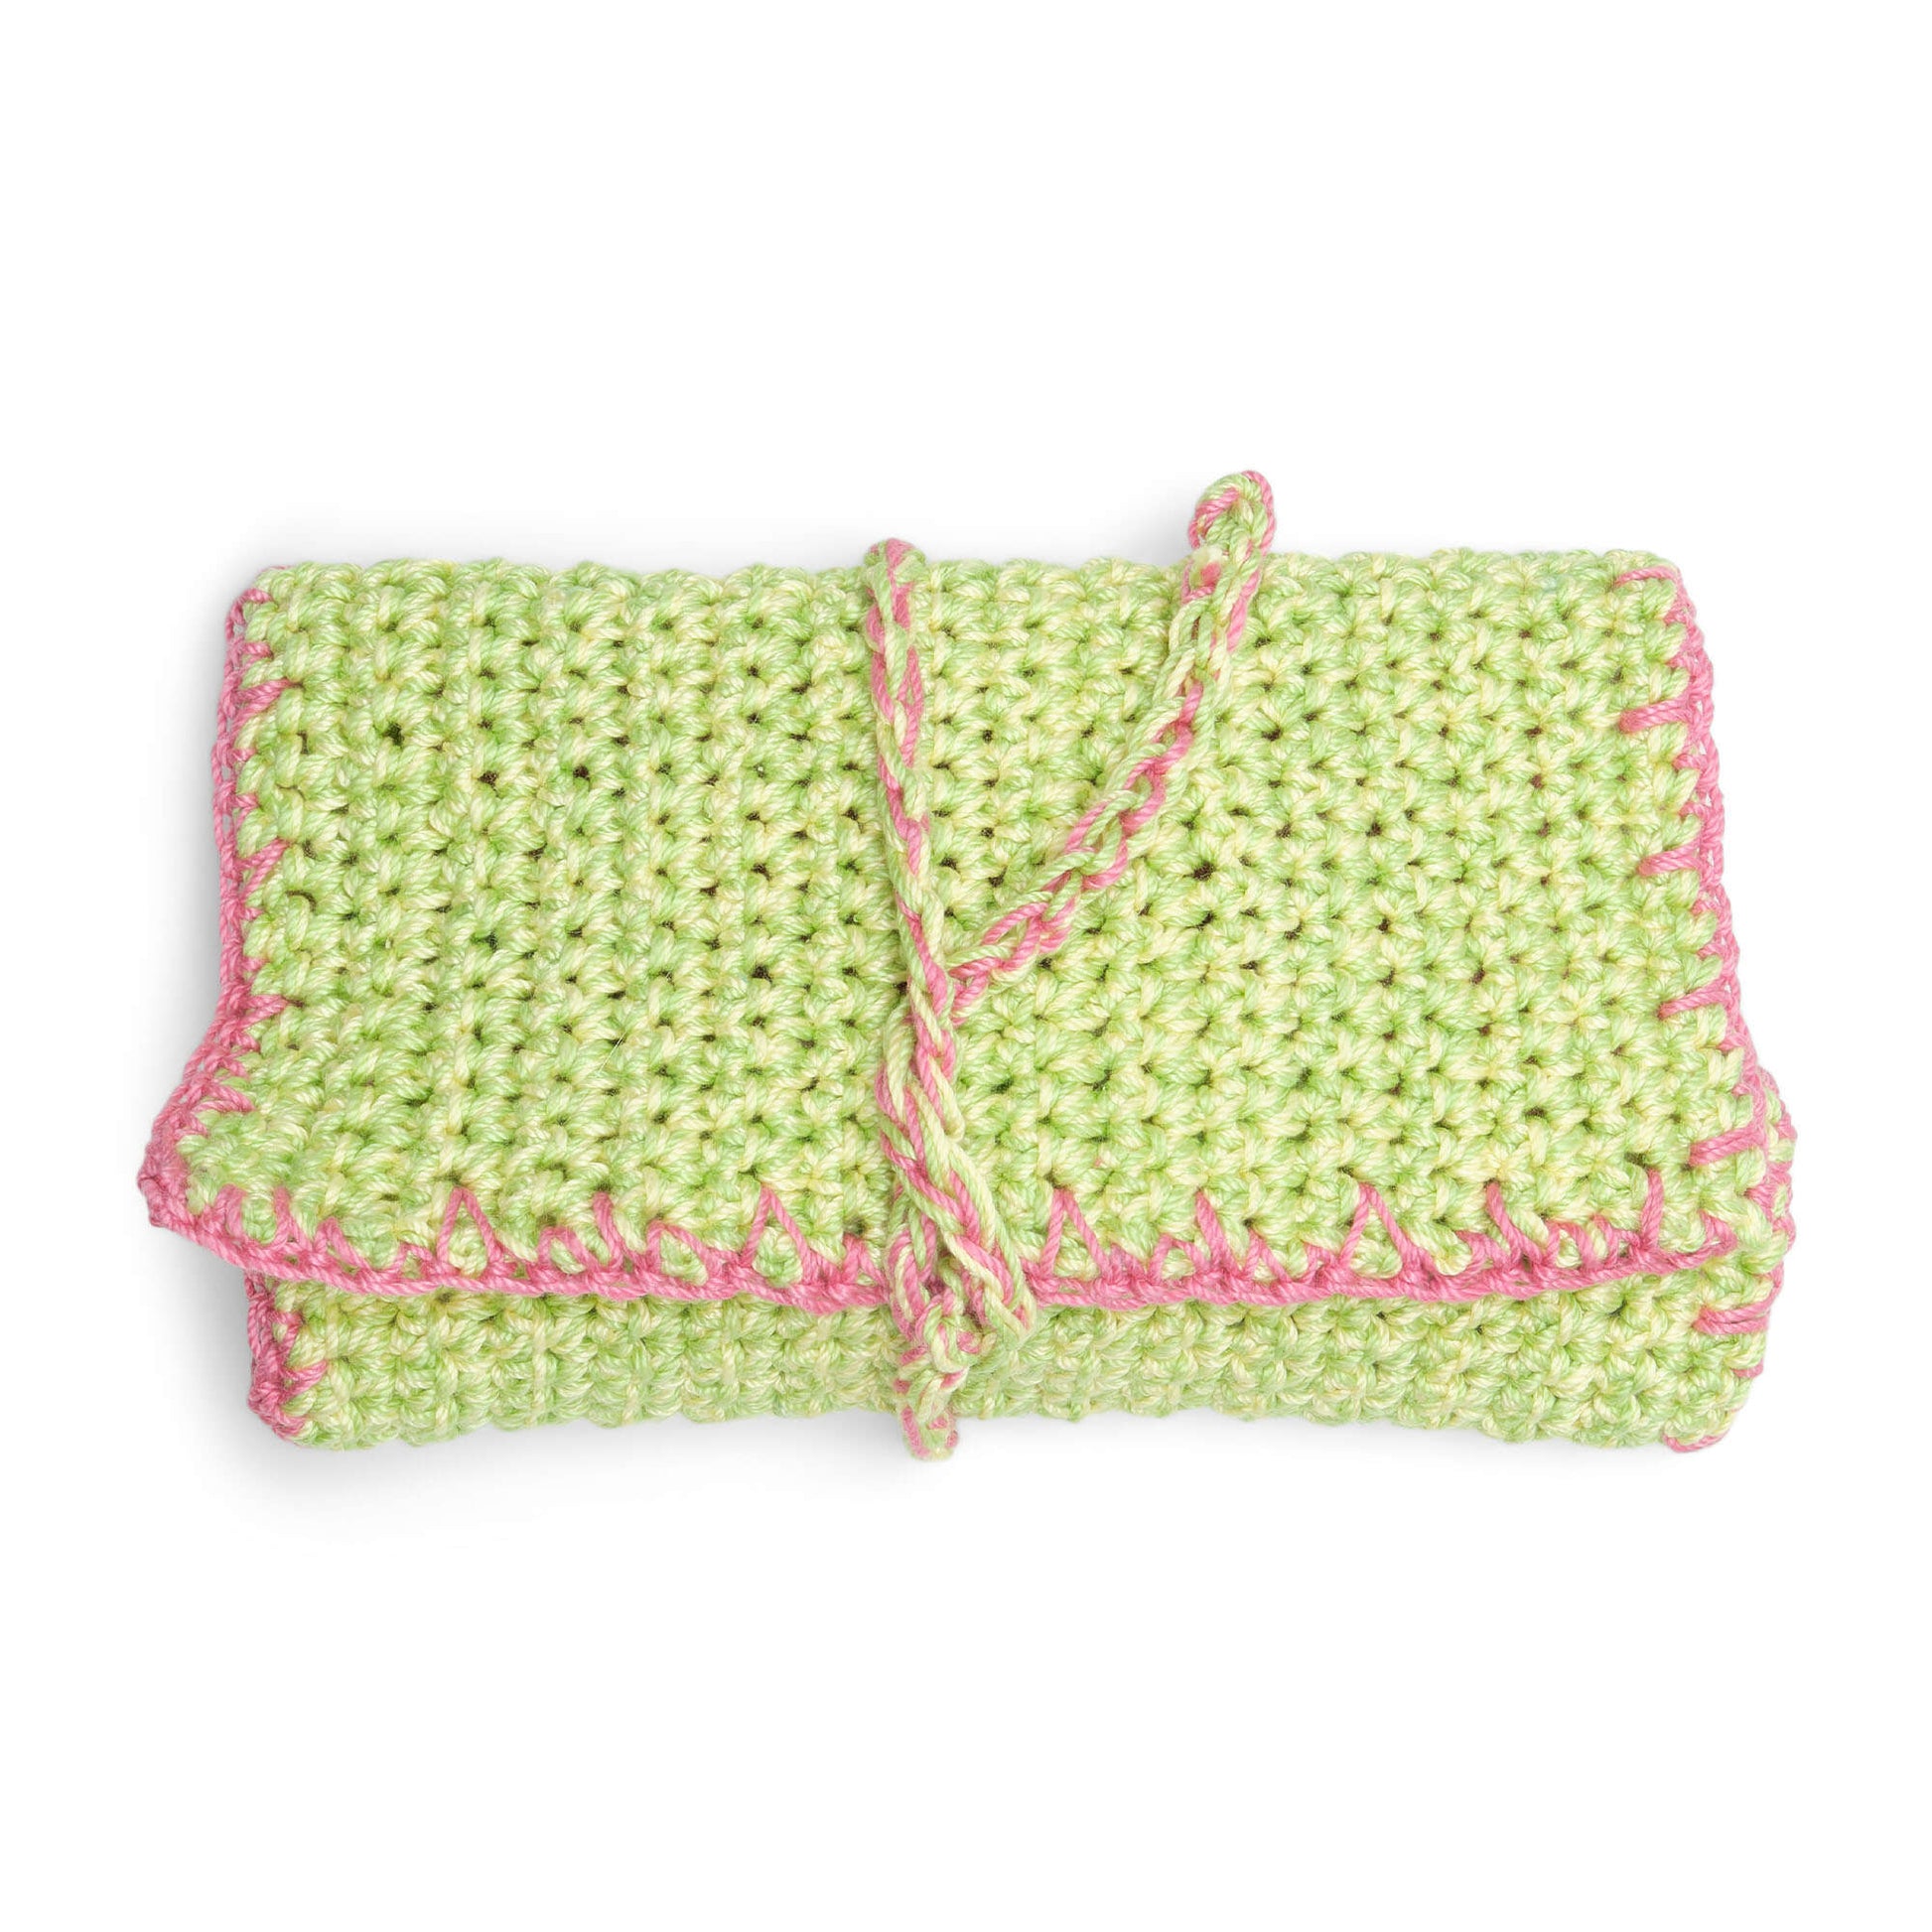 Free Aunt Lydia Twist N Lock Small Case Crochet Pattern